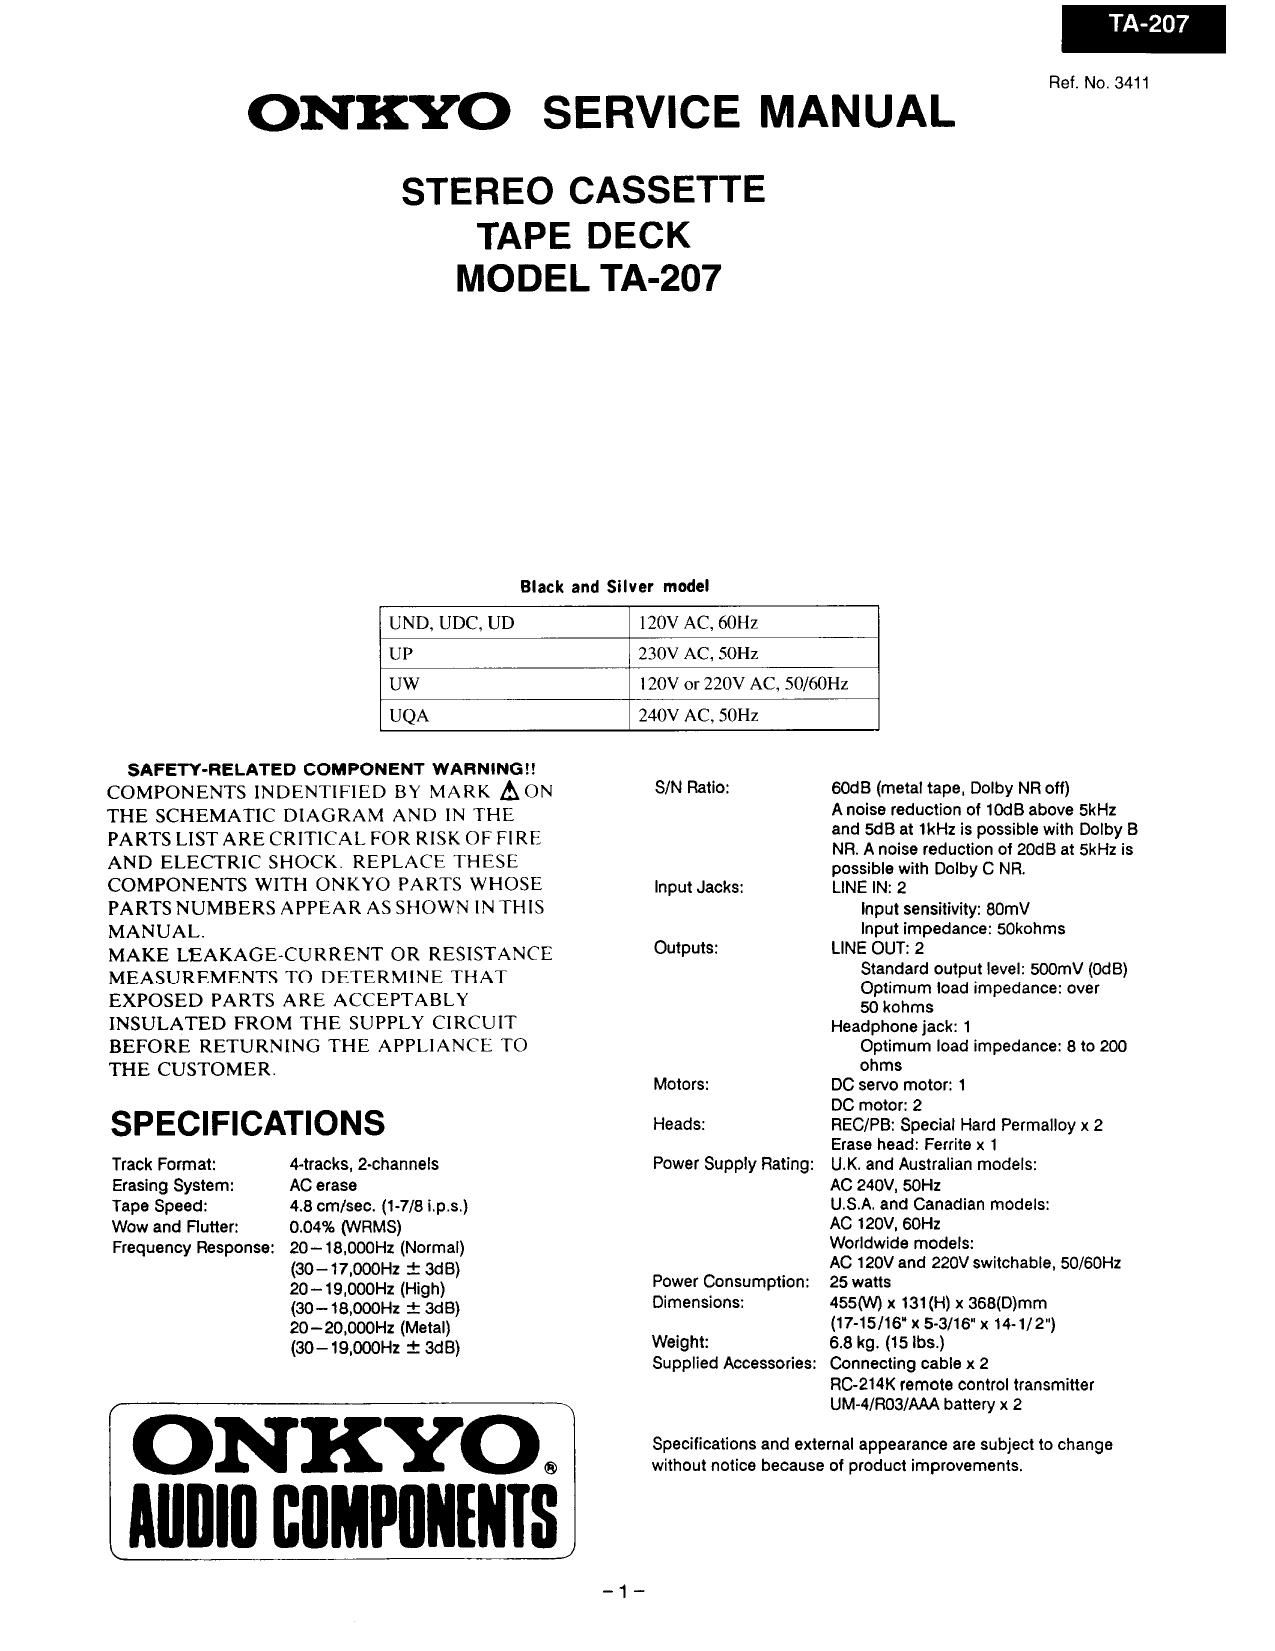 Onkyo TA 207 Service Manual